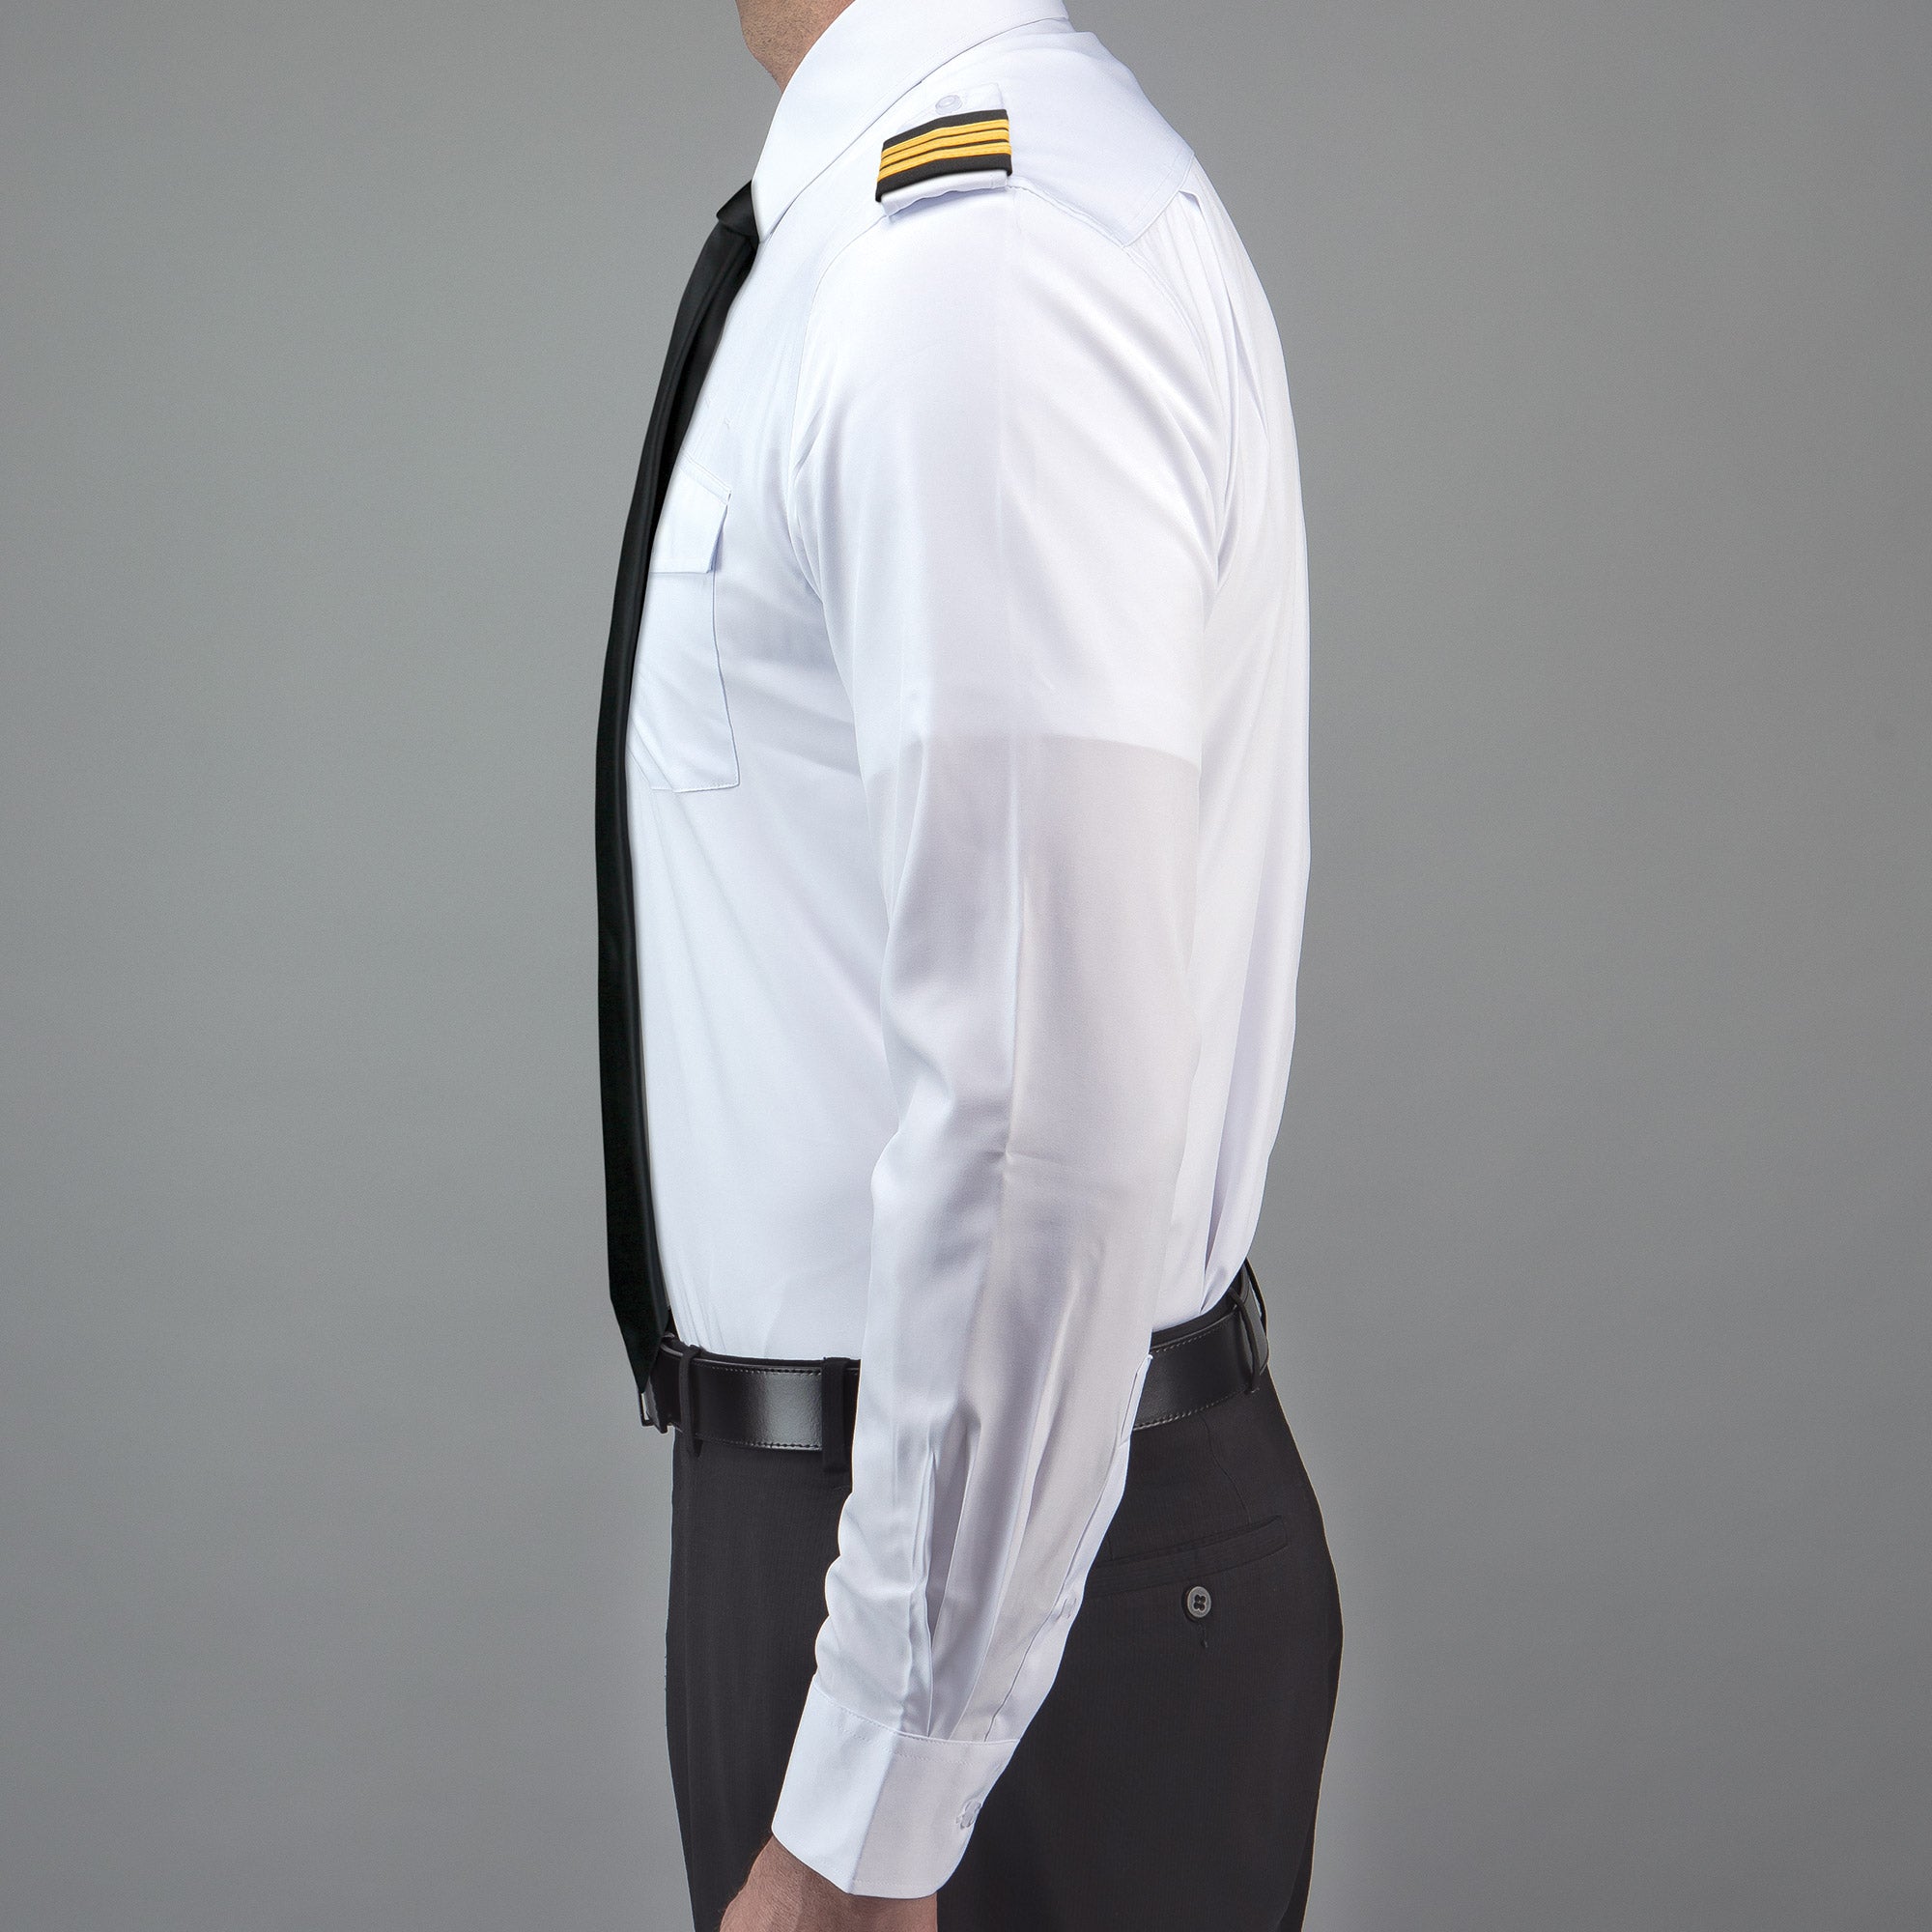 Flextech - Professional Pilot Shirt Long Sleeve - LIFT Aviation